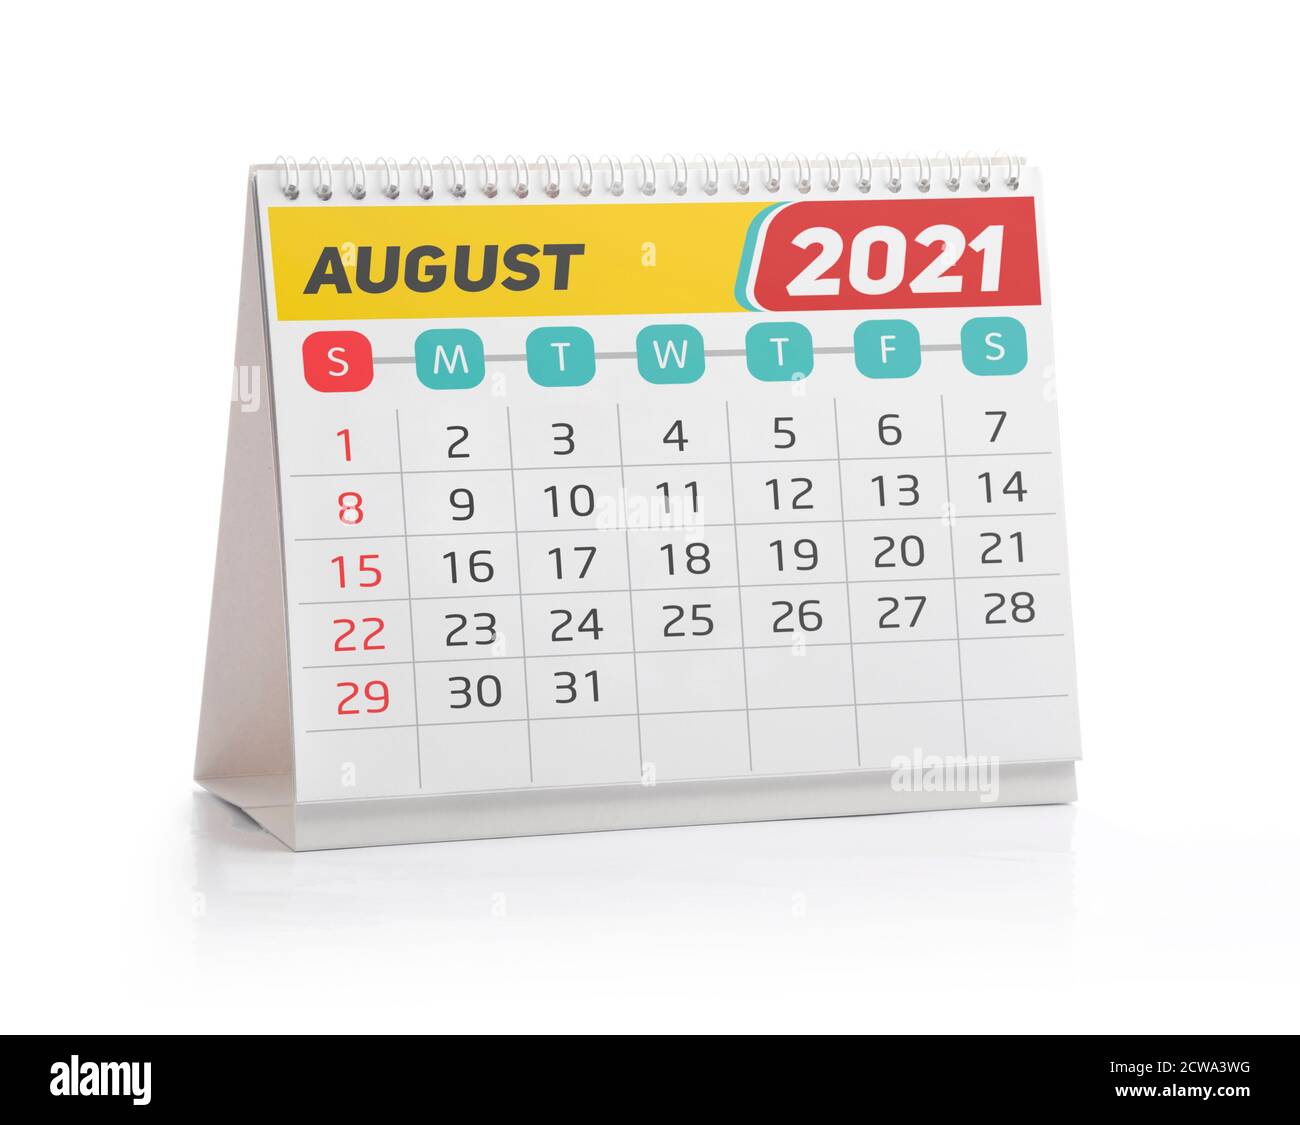 August 2021 Office Kalender isoliert auf Weiß Stockfoto